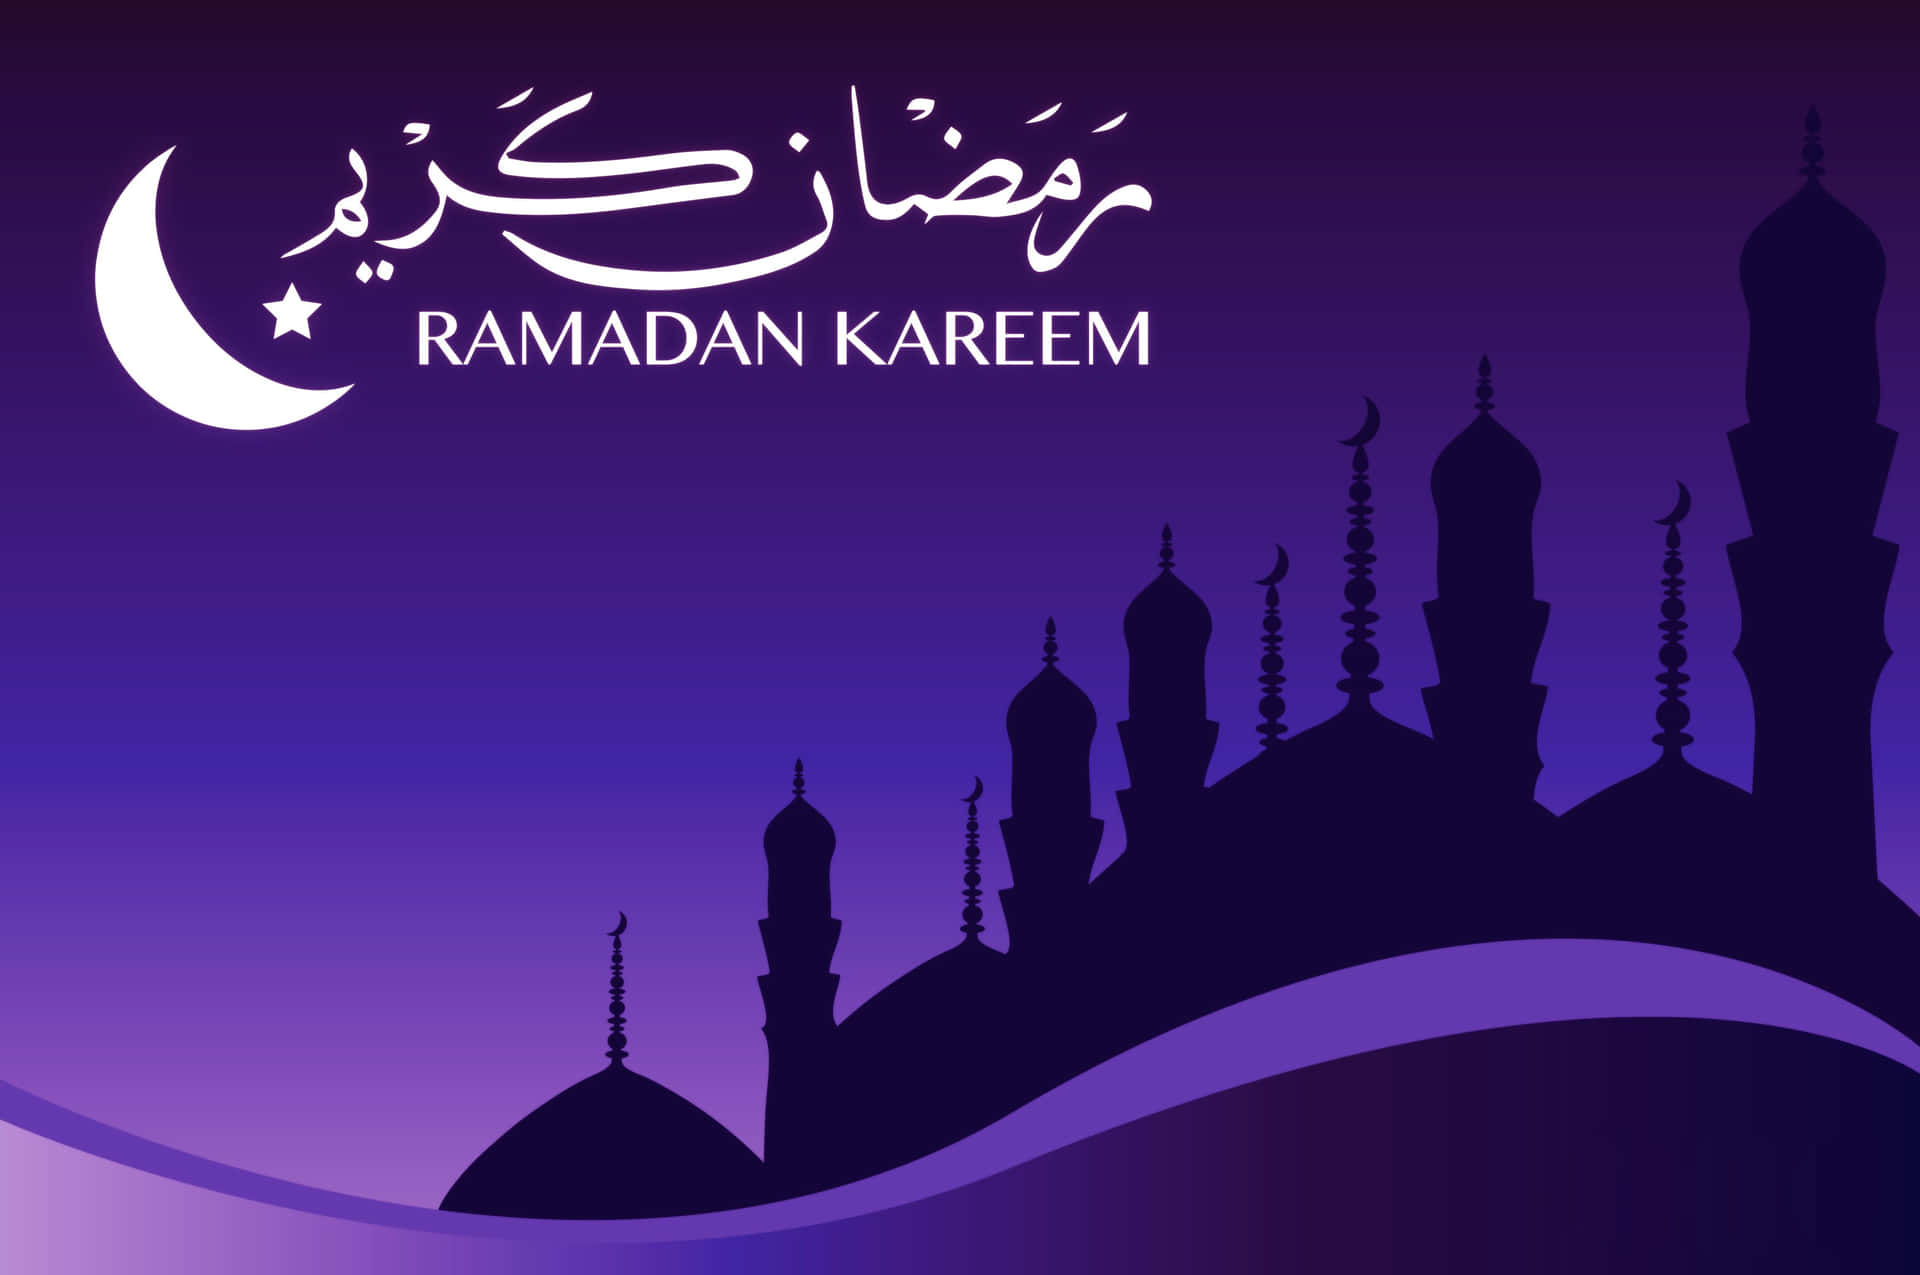 Feiernsie Einen Inspirierenden Ramadan.